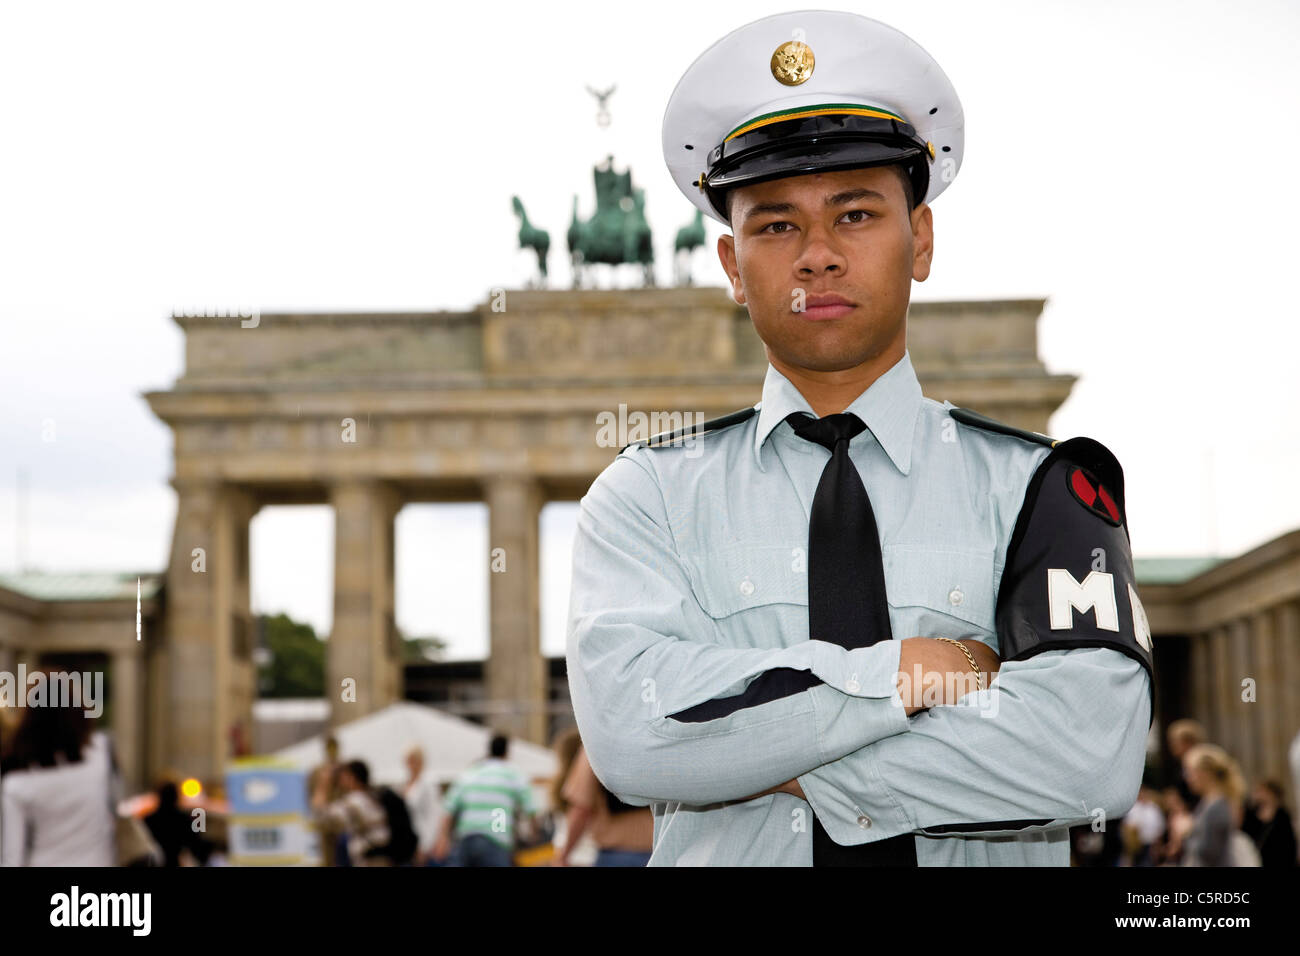 Germania, Berlino, soldato americano nella parte anteriore del Brandenburger Tor, ritratto, close-up Foto Stock